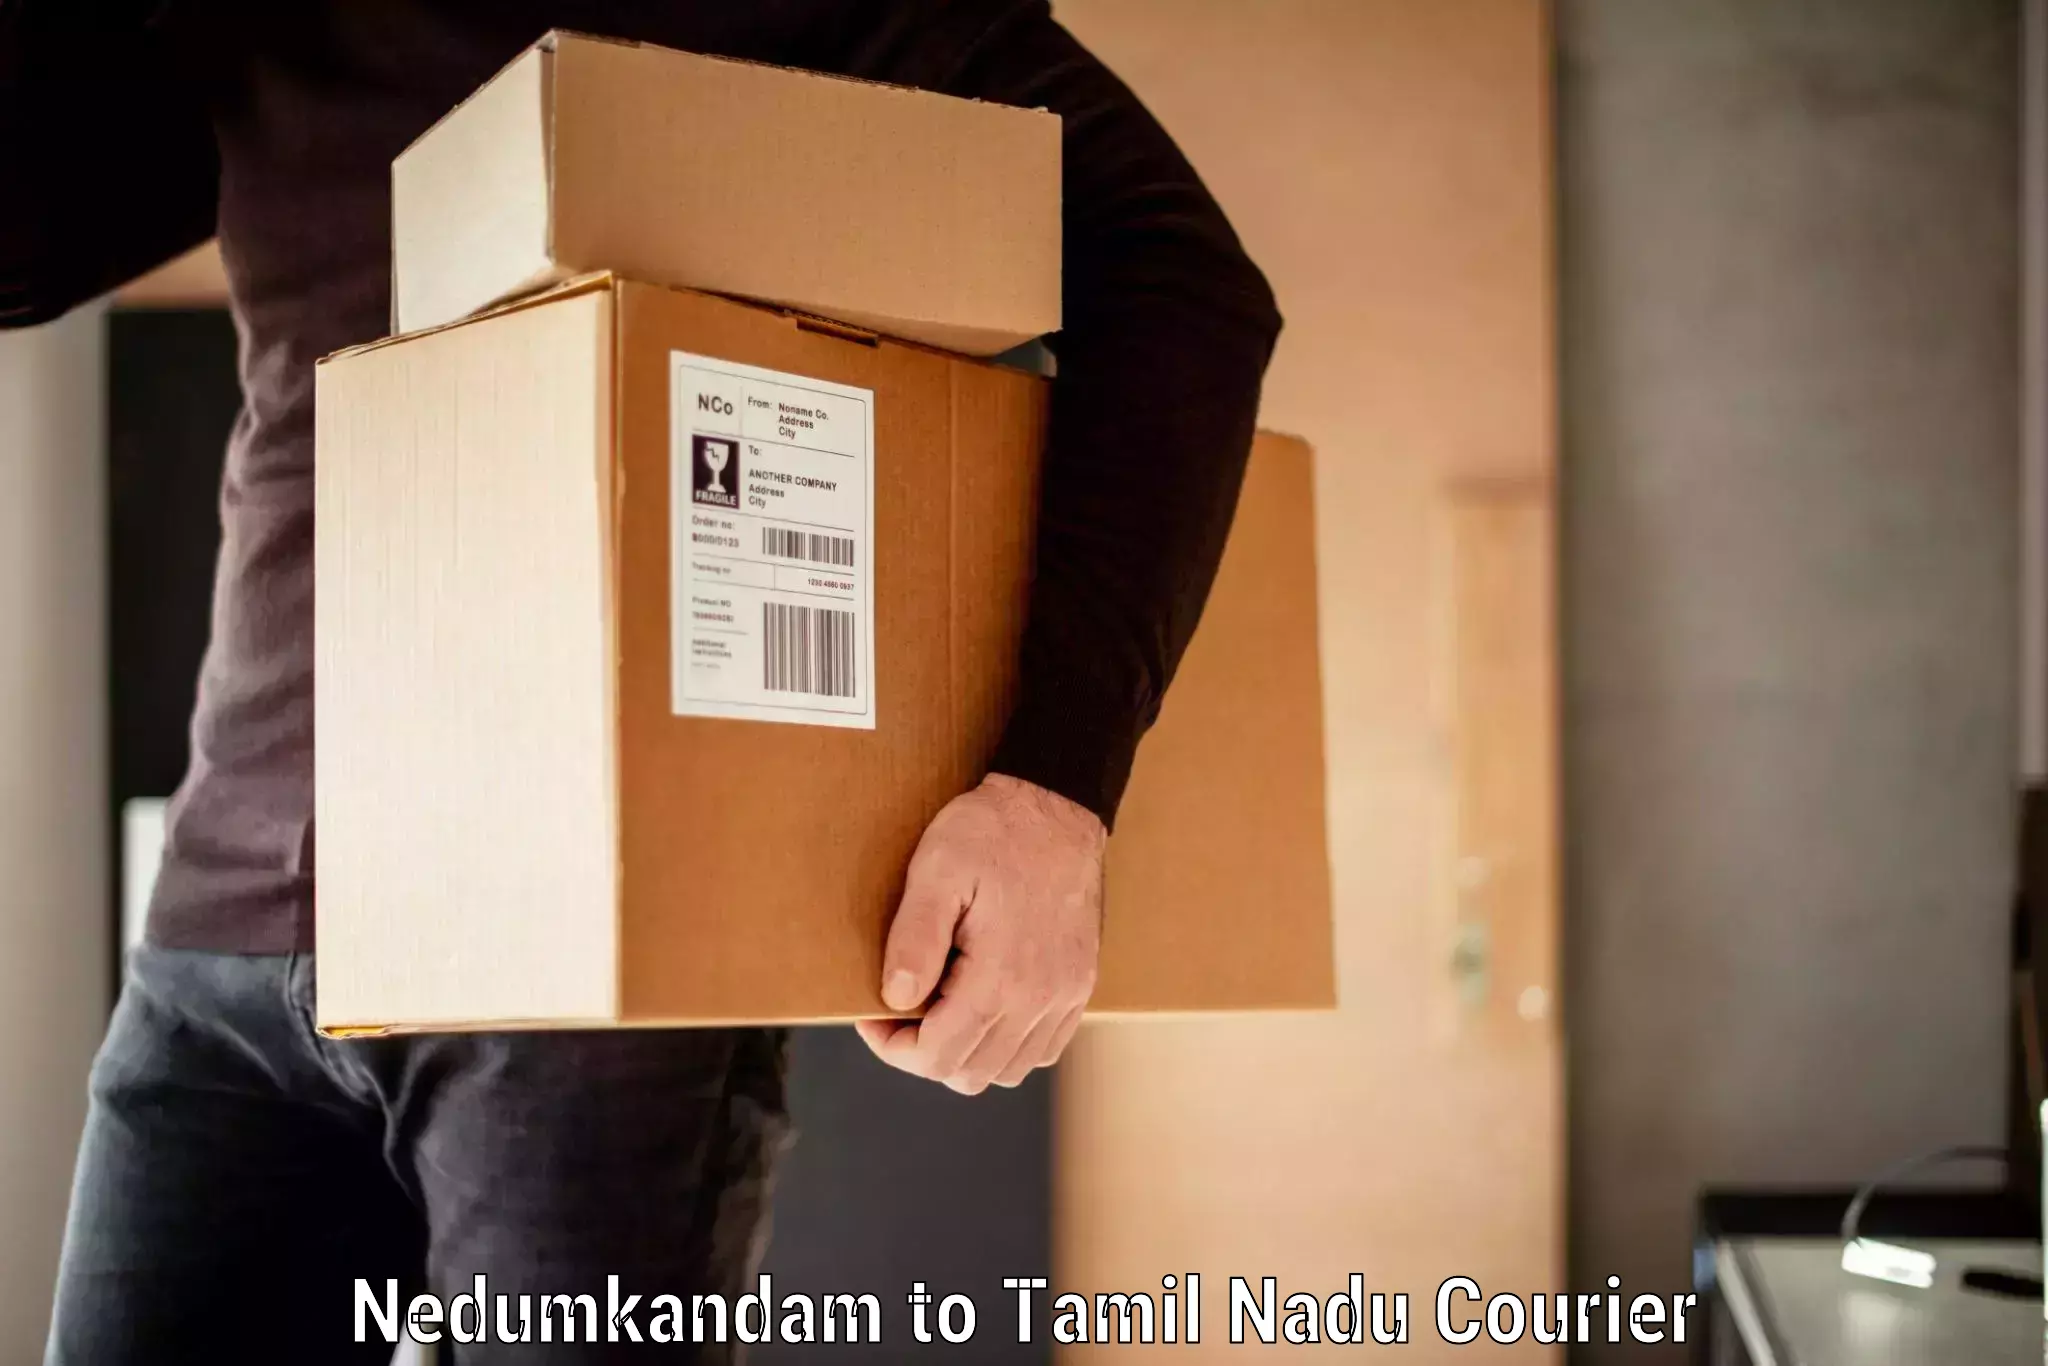 Baggage transport estimate Nedumkandam to Annur